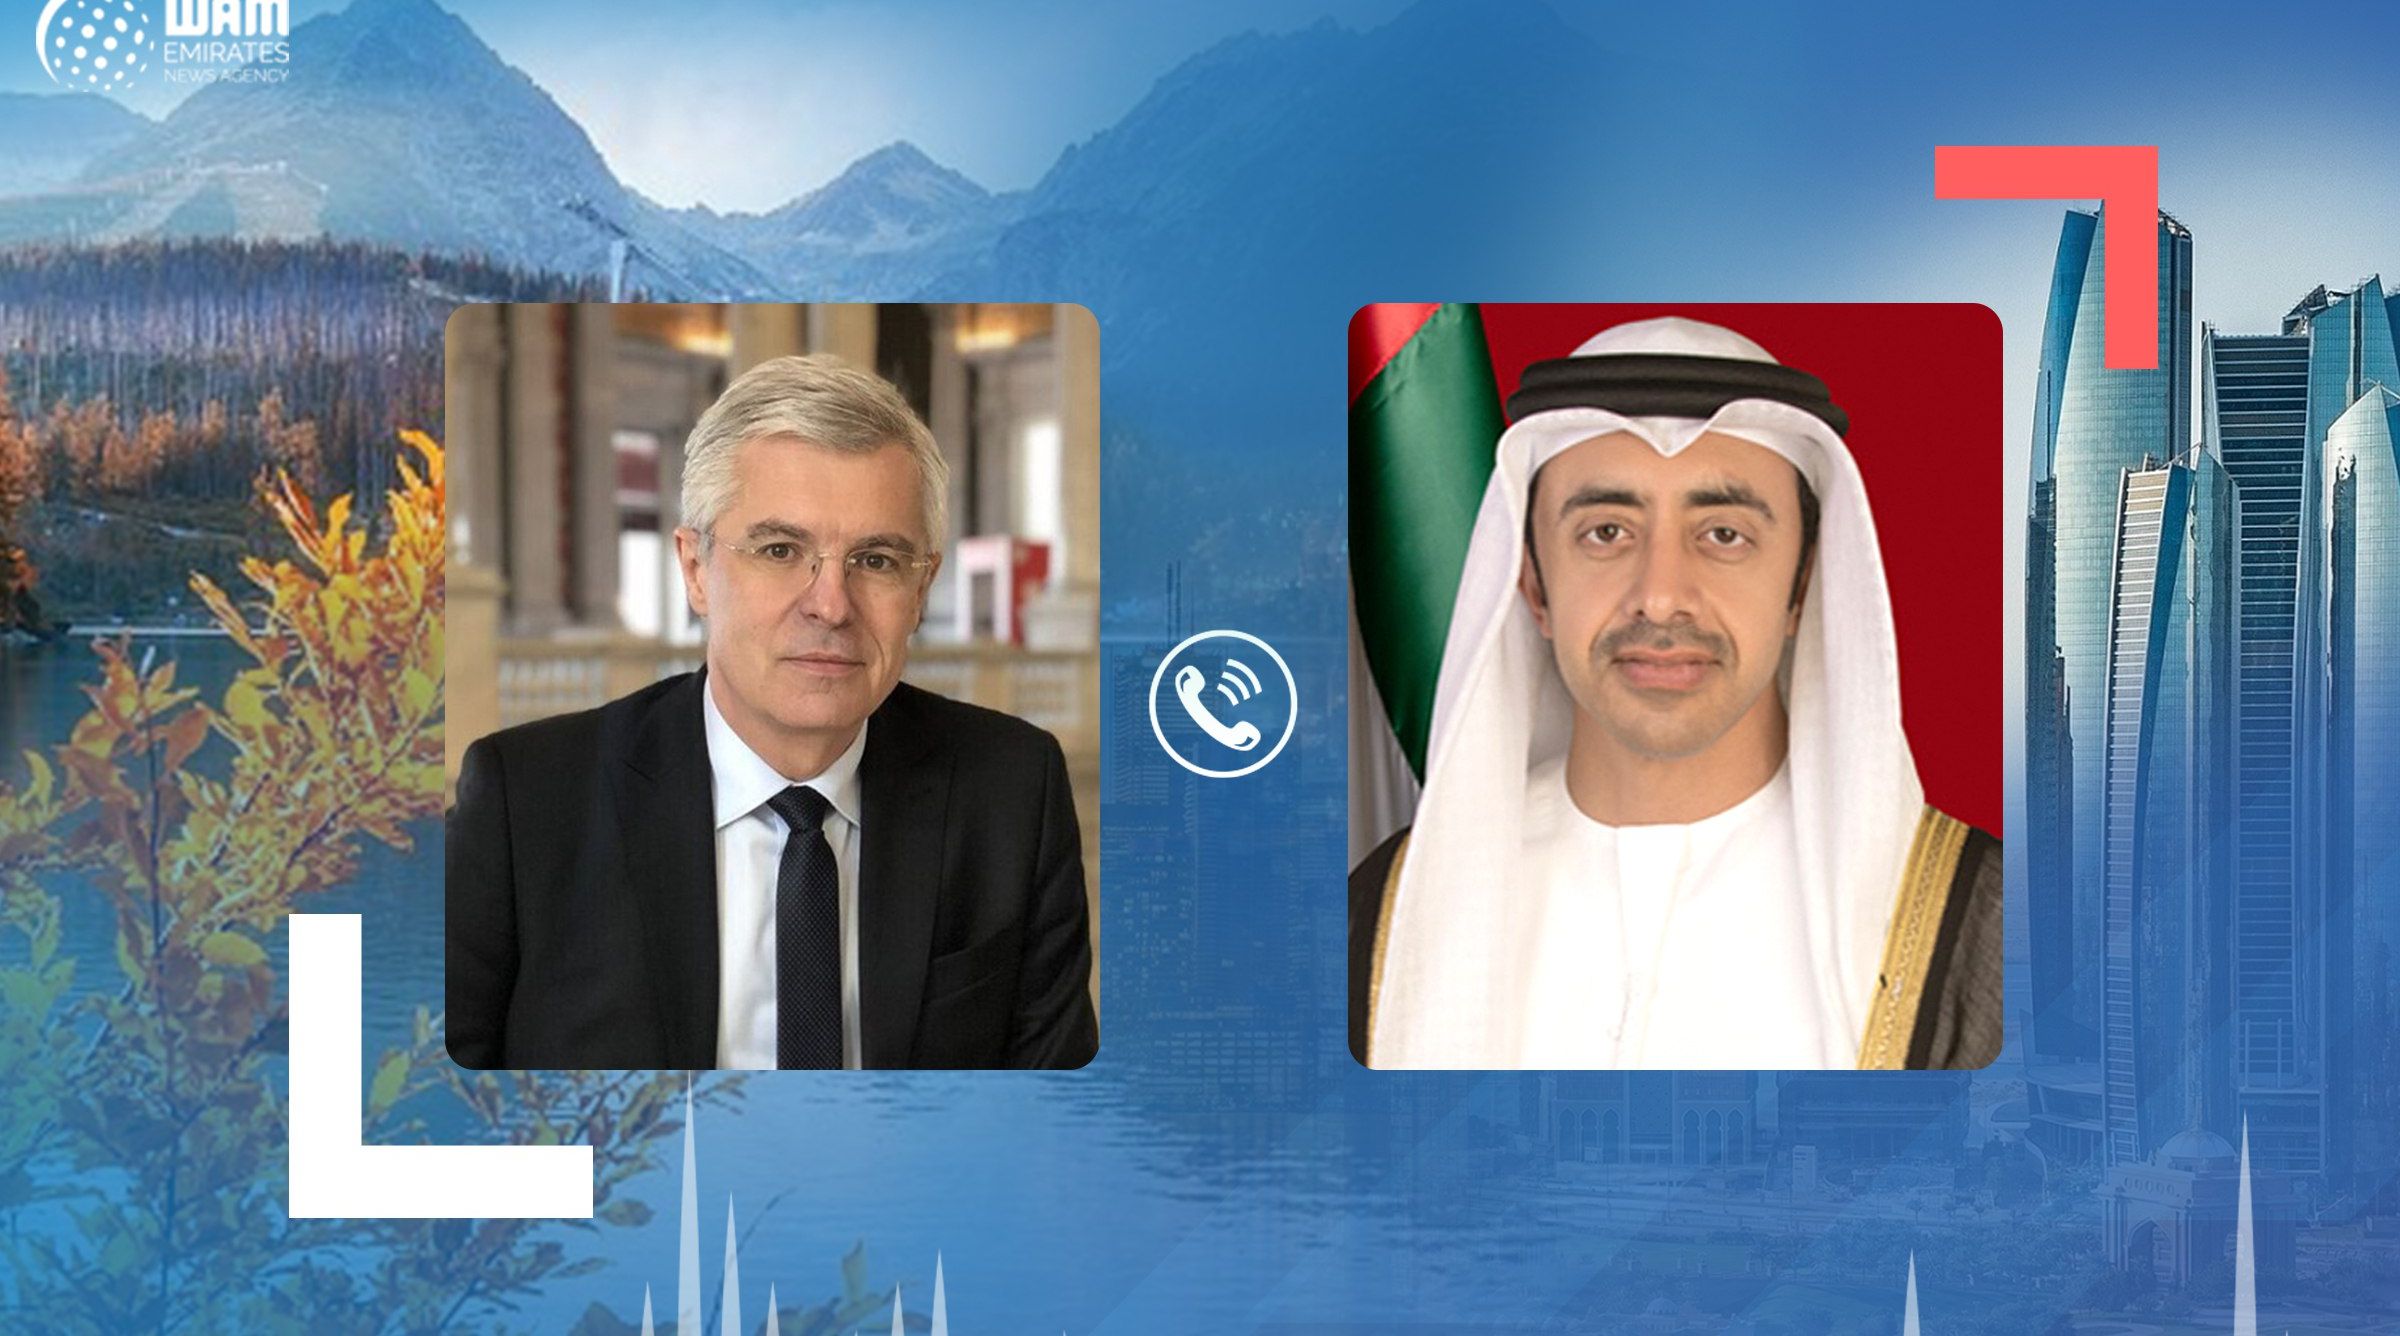 وزیر عبداللہ بن زاید النہیان نے ایون کوریوک کے ساتھ متحدہ عرب امارات اور سلوواکیہ کے مابین تعلقات اور انسداد کوویڈ19 پر بات چیت کی